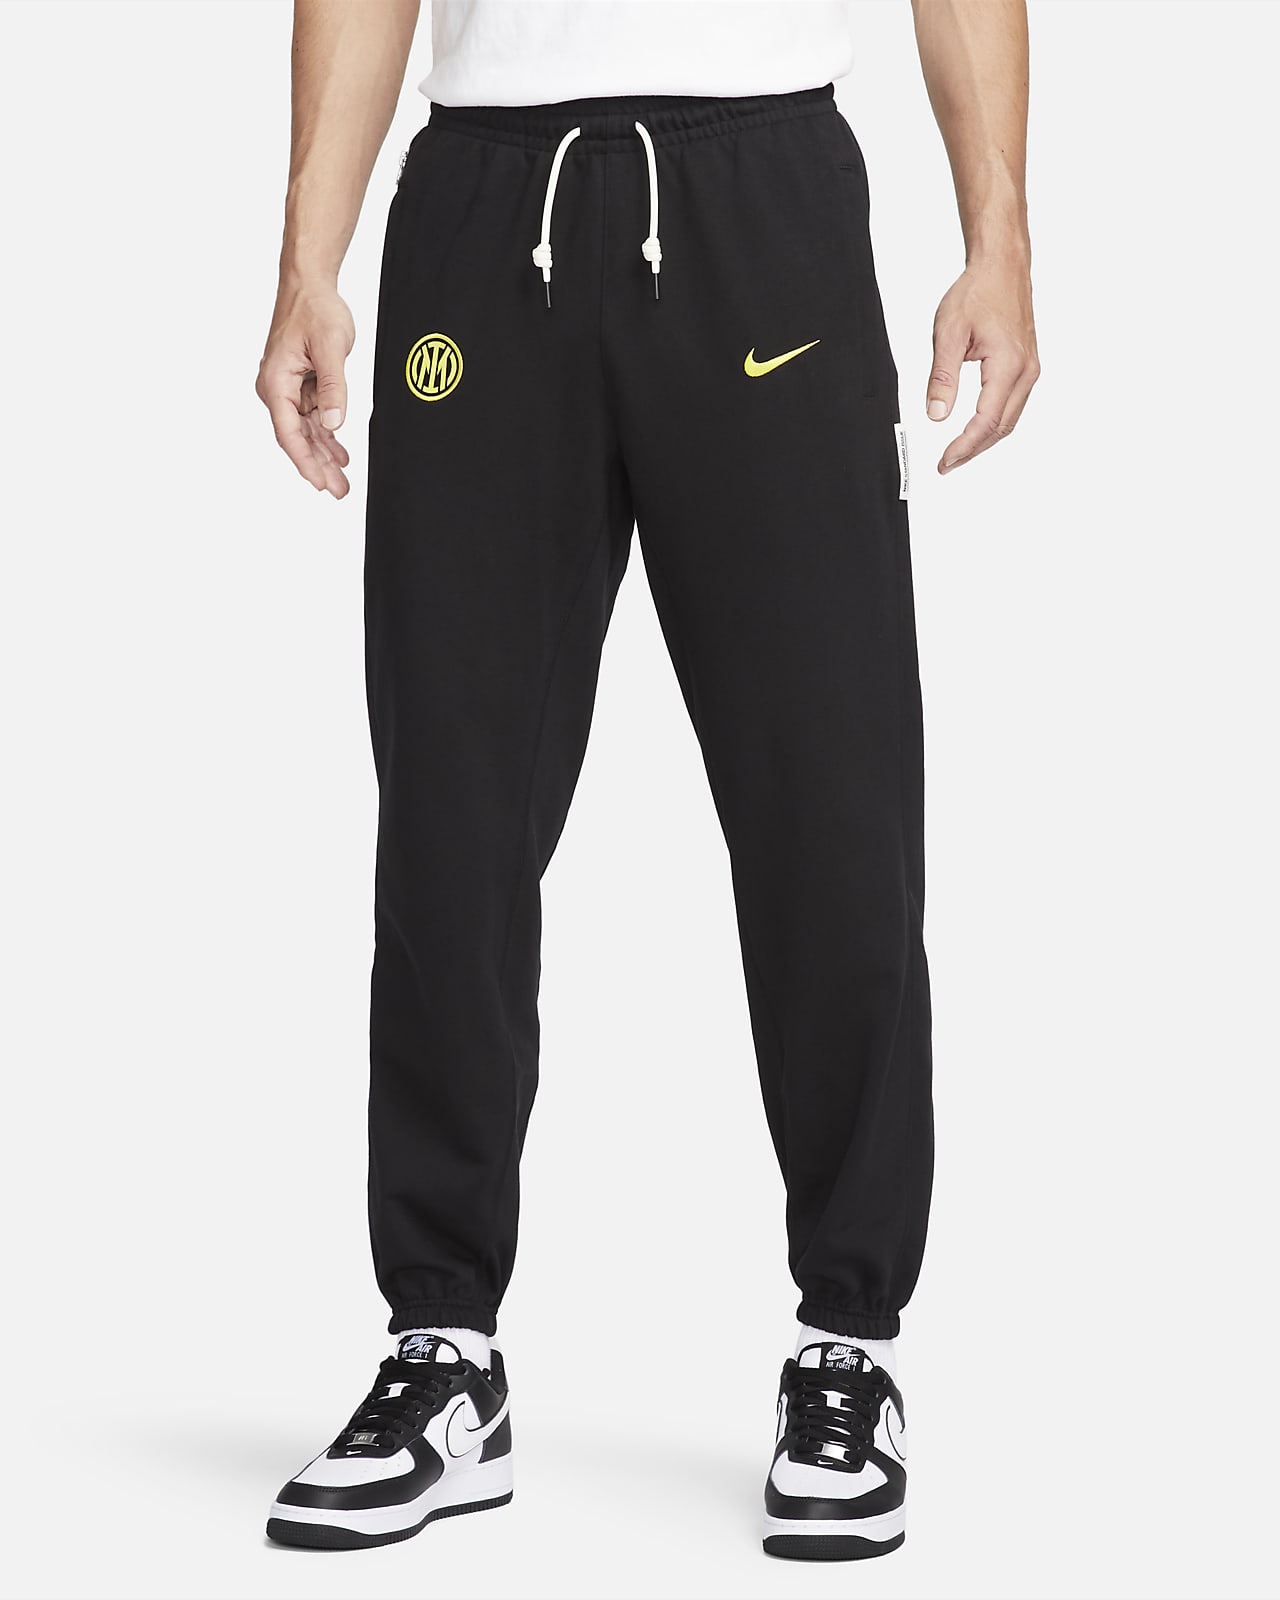 Stå på ski Shaded Akademi Inter Milan Standard Issue Nike Football-bukser til mænd. Nike DK